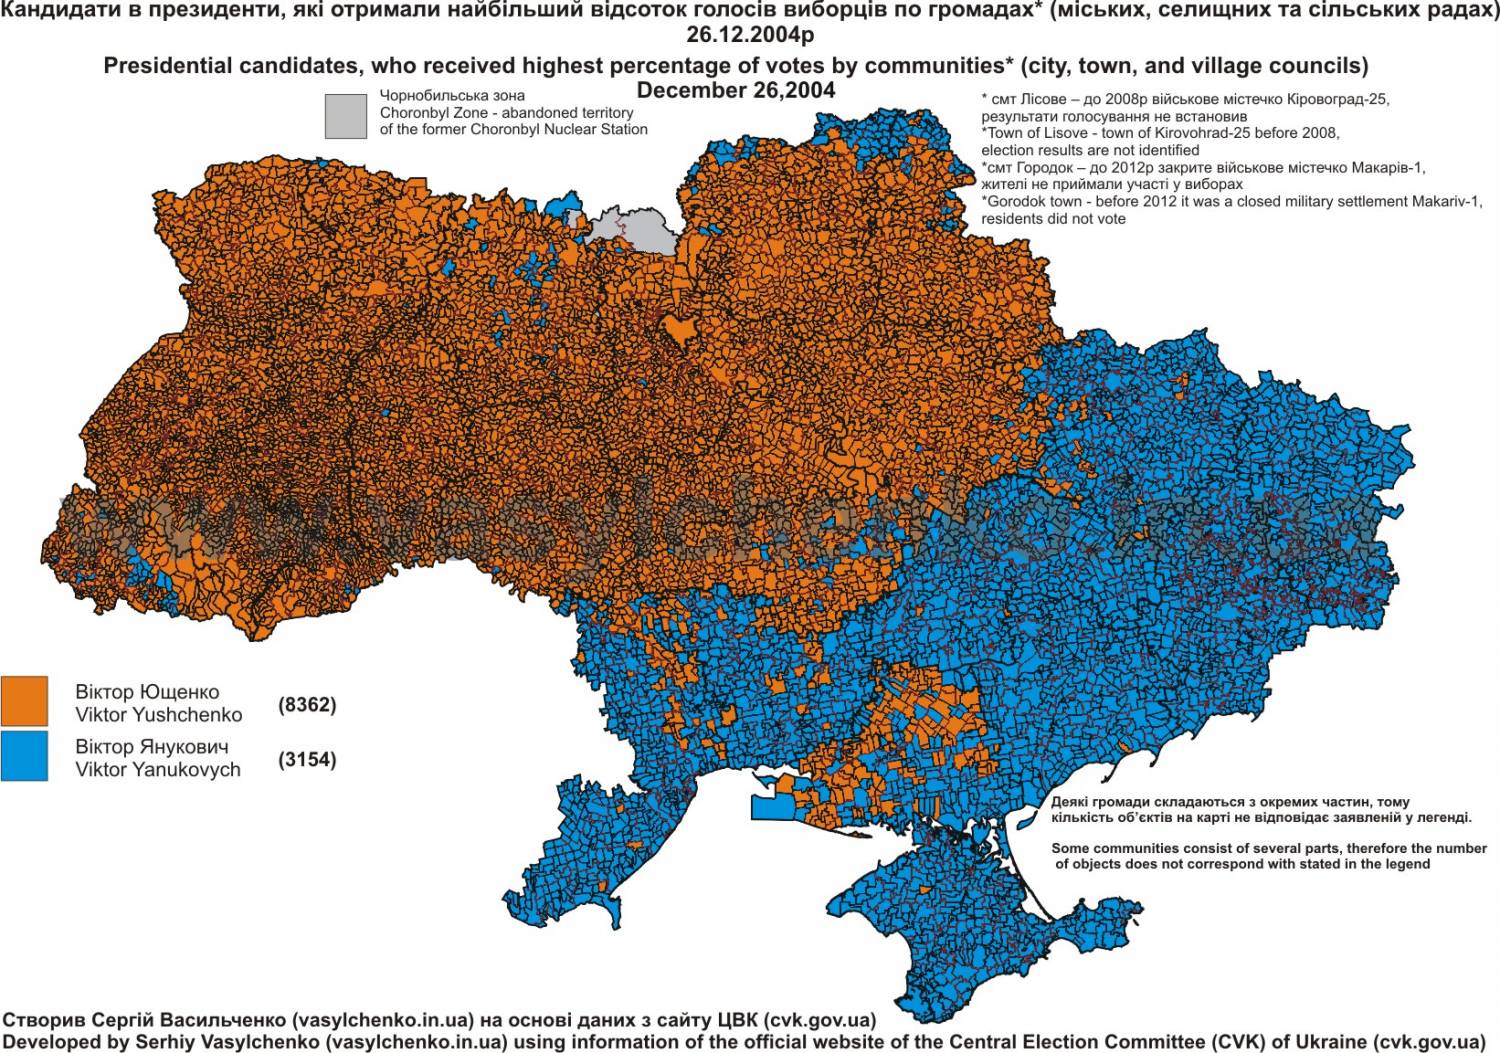 Единая государственная карта. Карта выборов на Украине 2010.